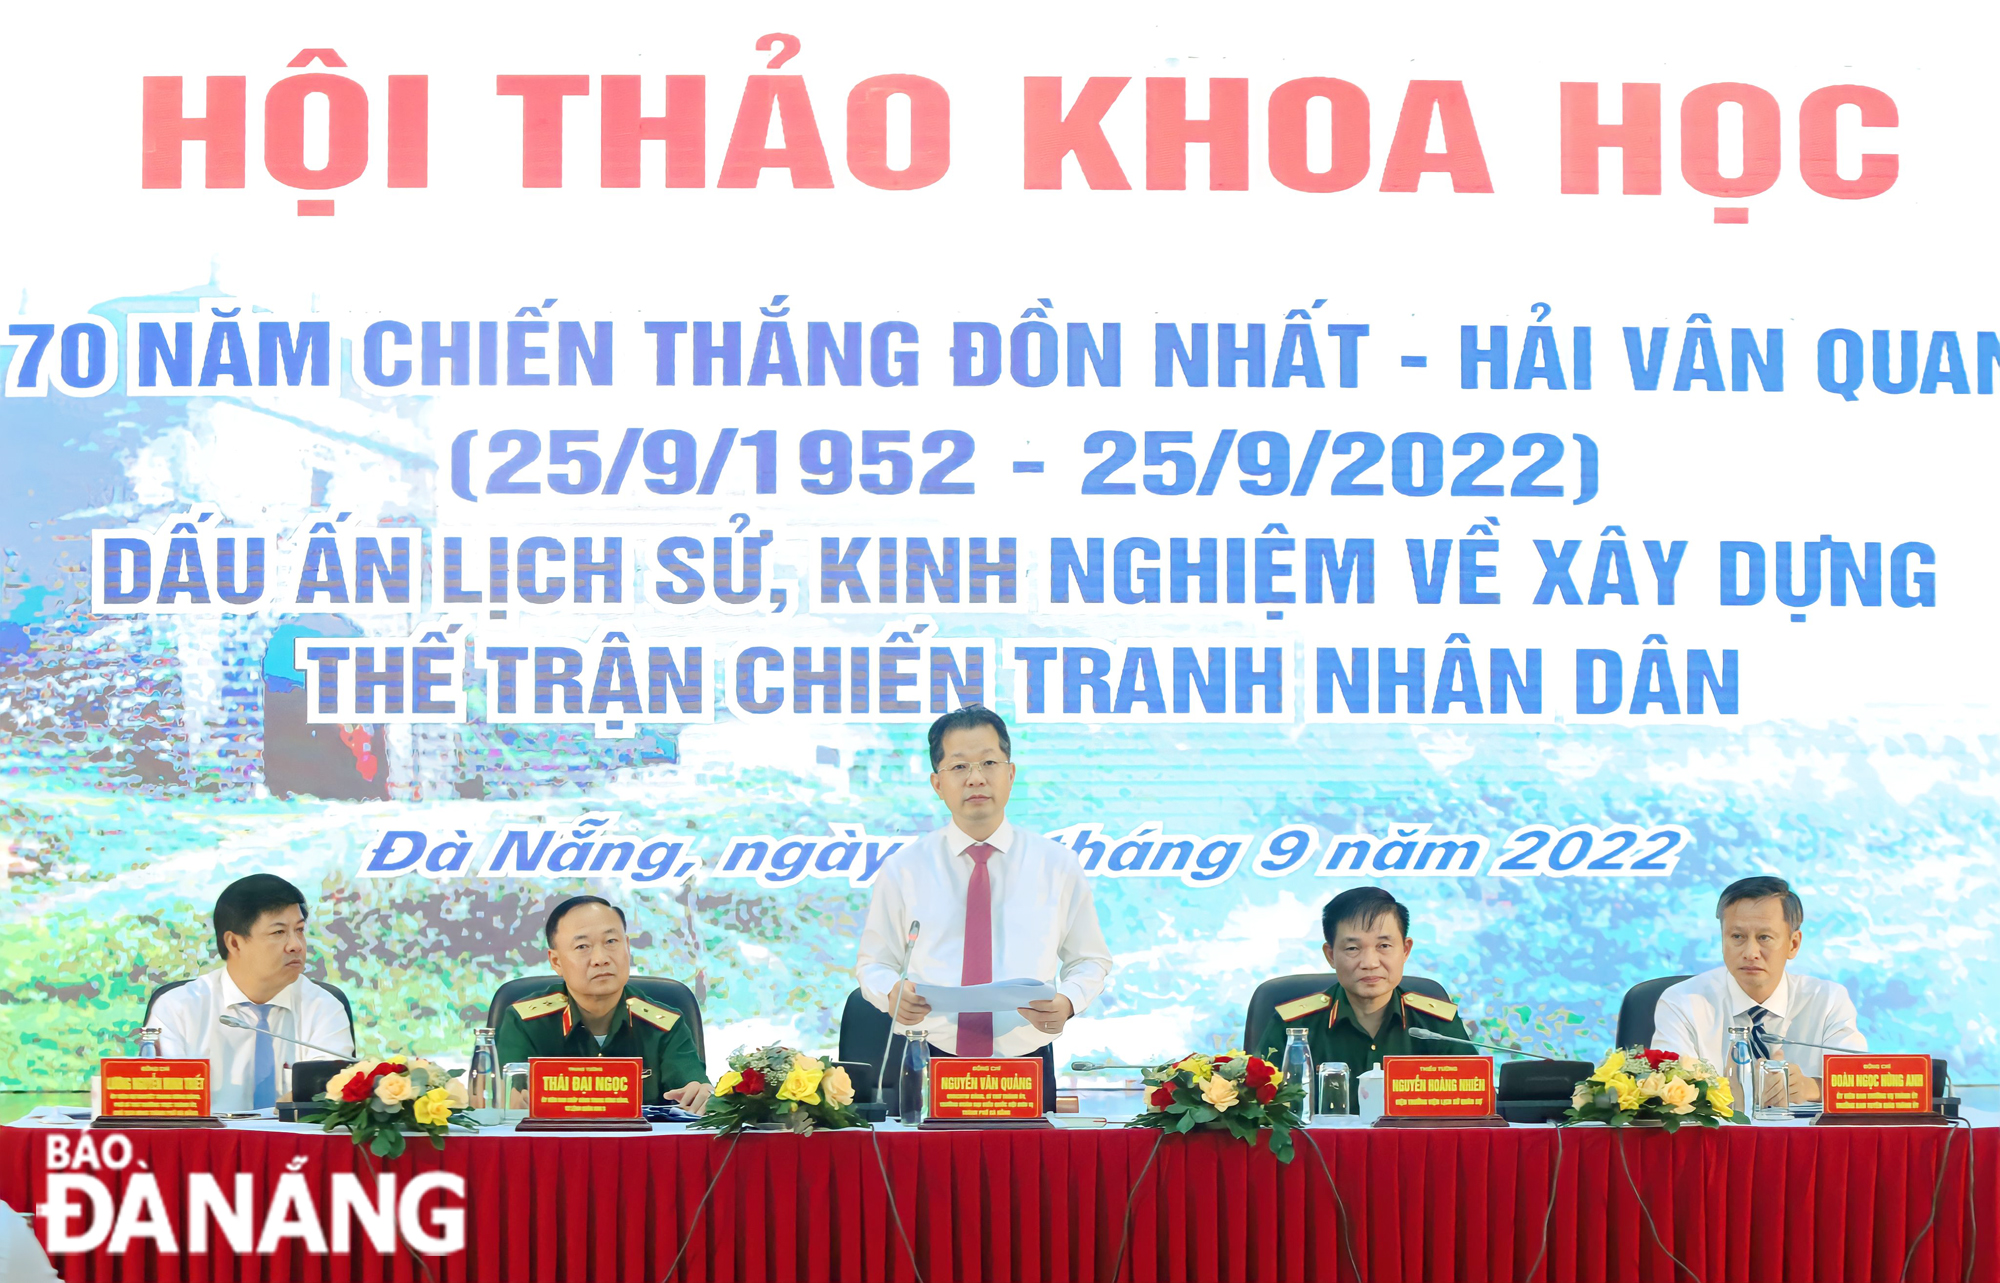 Bí thư Thành ủy Nguyễn Văn Quảng (giữa), Trung tướng Thái Đại Ngọc (thứ 2, trái sang) cùng các đồng chí lãnh đạo đồng chủ trì hội thảo khoa học. Ảnh: NGỌC PHÚ